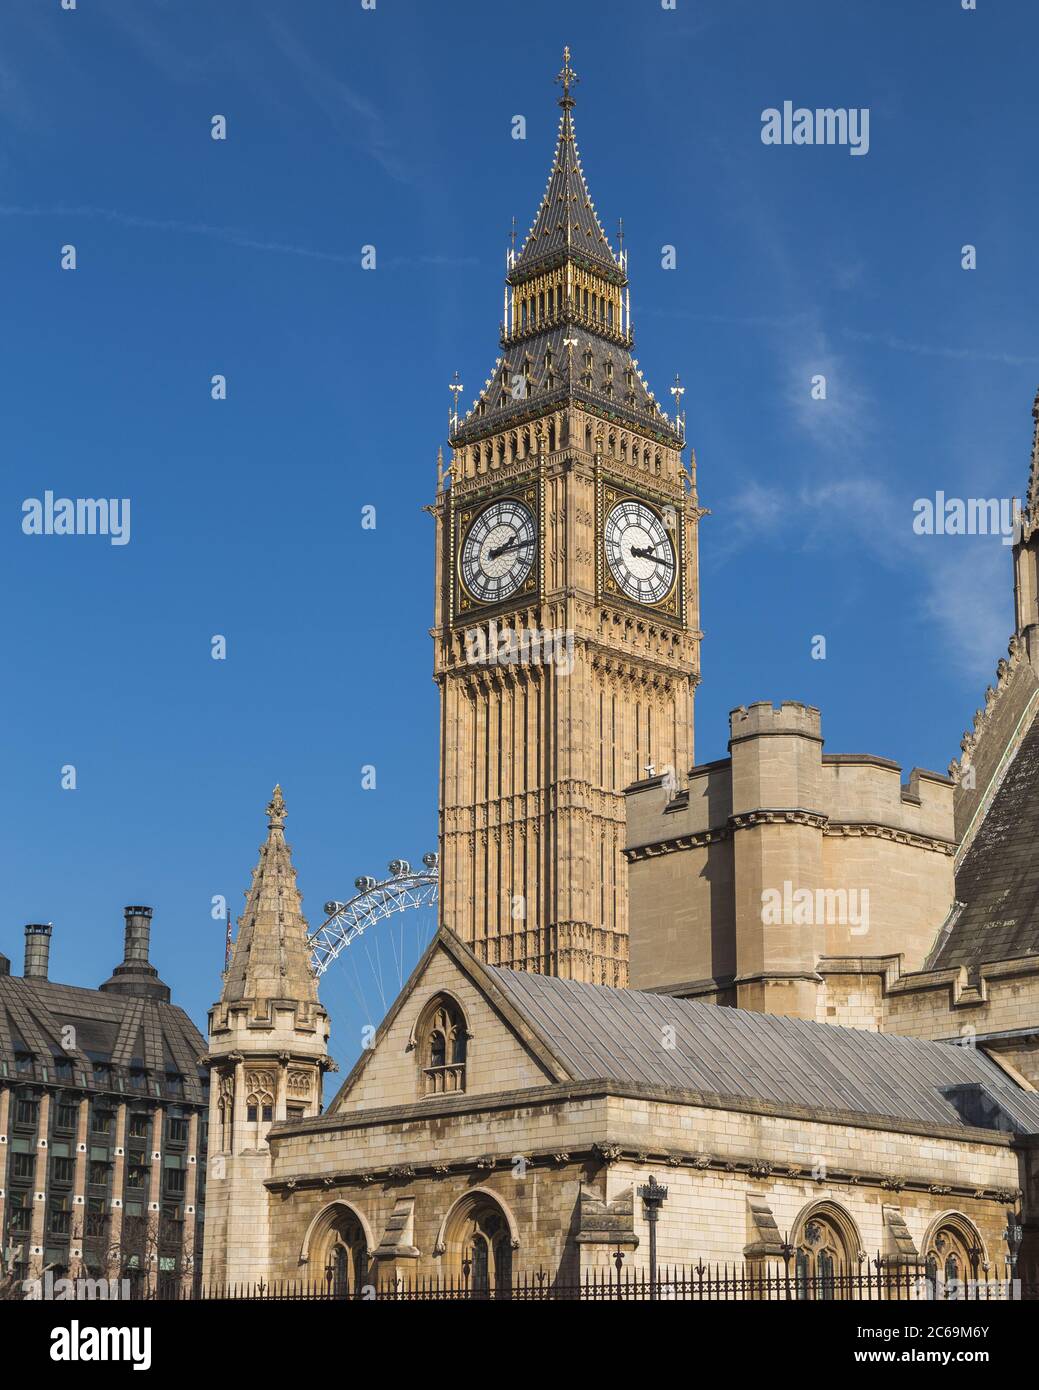 LONDRES, Royaume-Uni - 10 MARS 2015 : Big Ben et une partie du Palais de Westminster. Une partie du London Eye est visible en arrière-plan. Banque D'Images